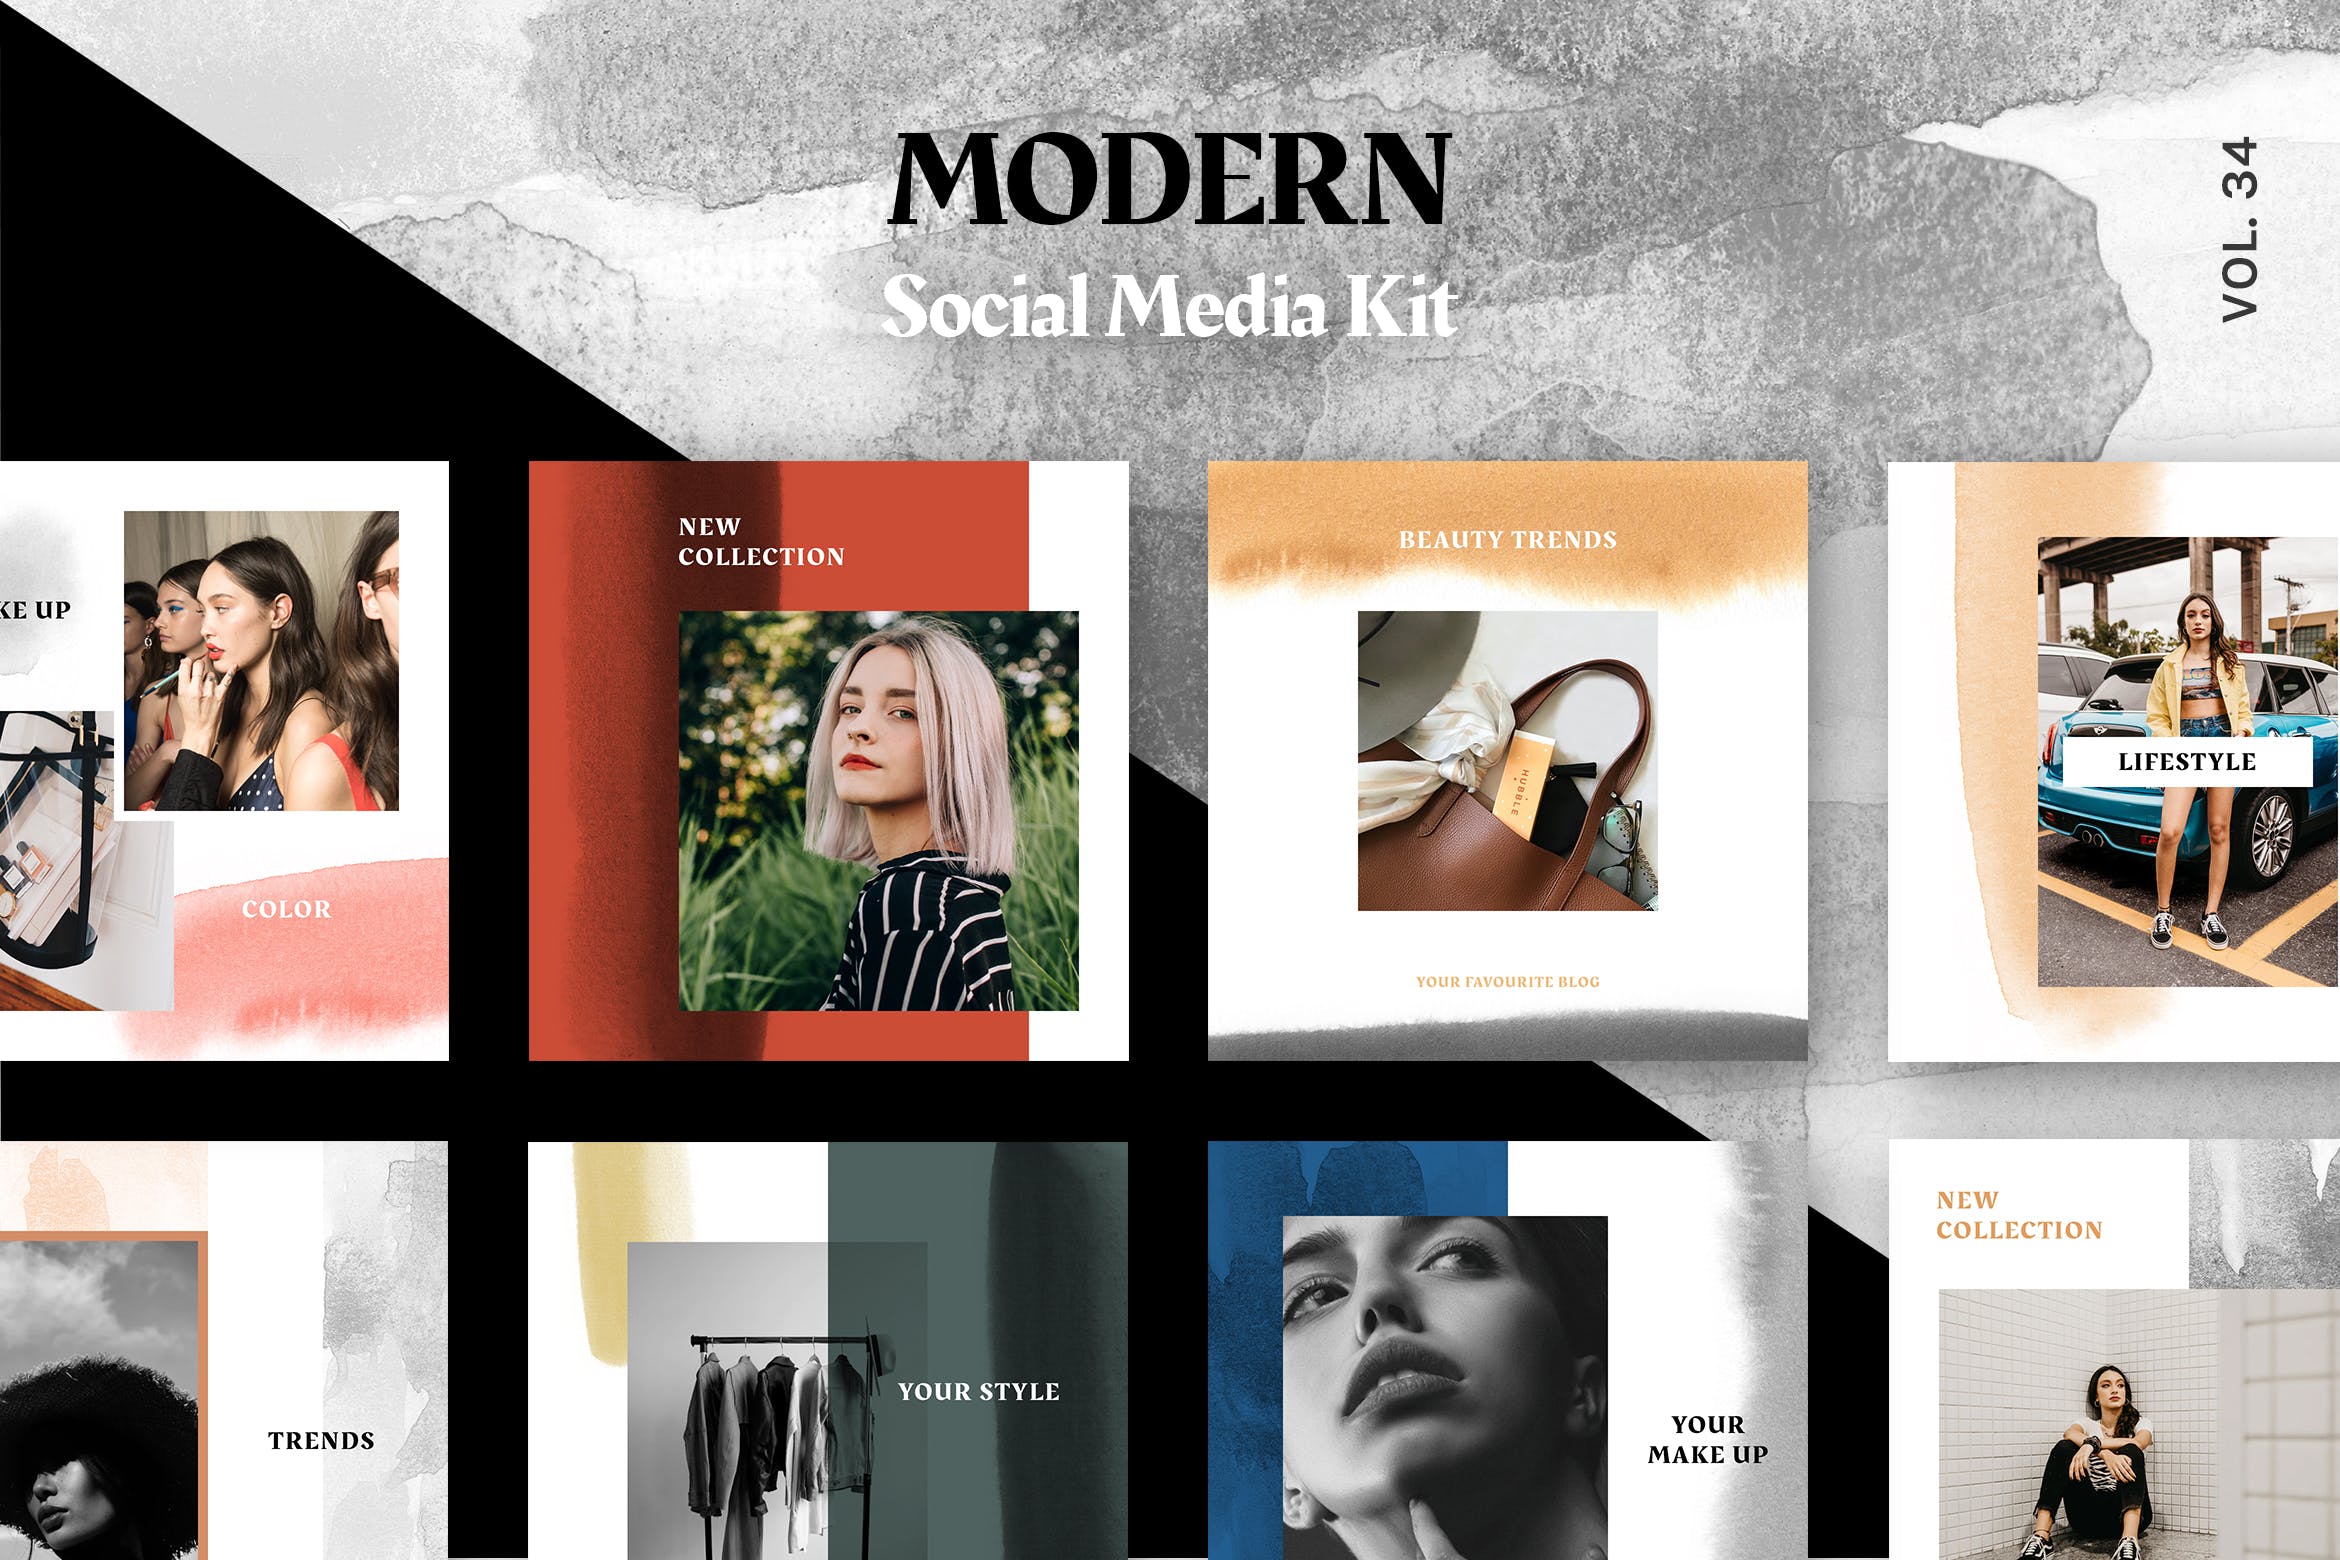 现代时尚风格社交媒体设计素材包v34 Modern Social Media Kit (Vol. 34)插图